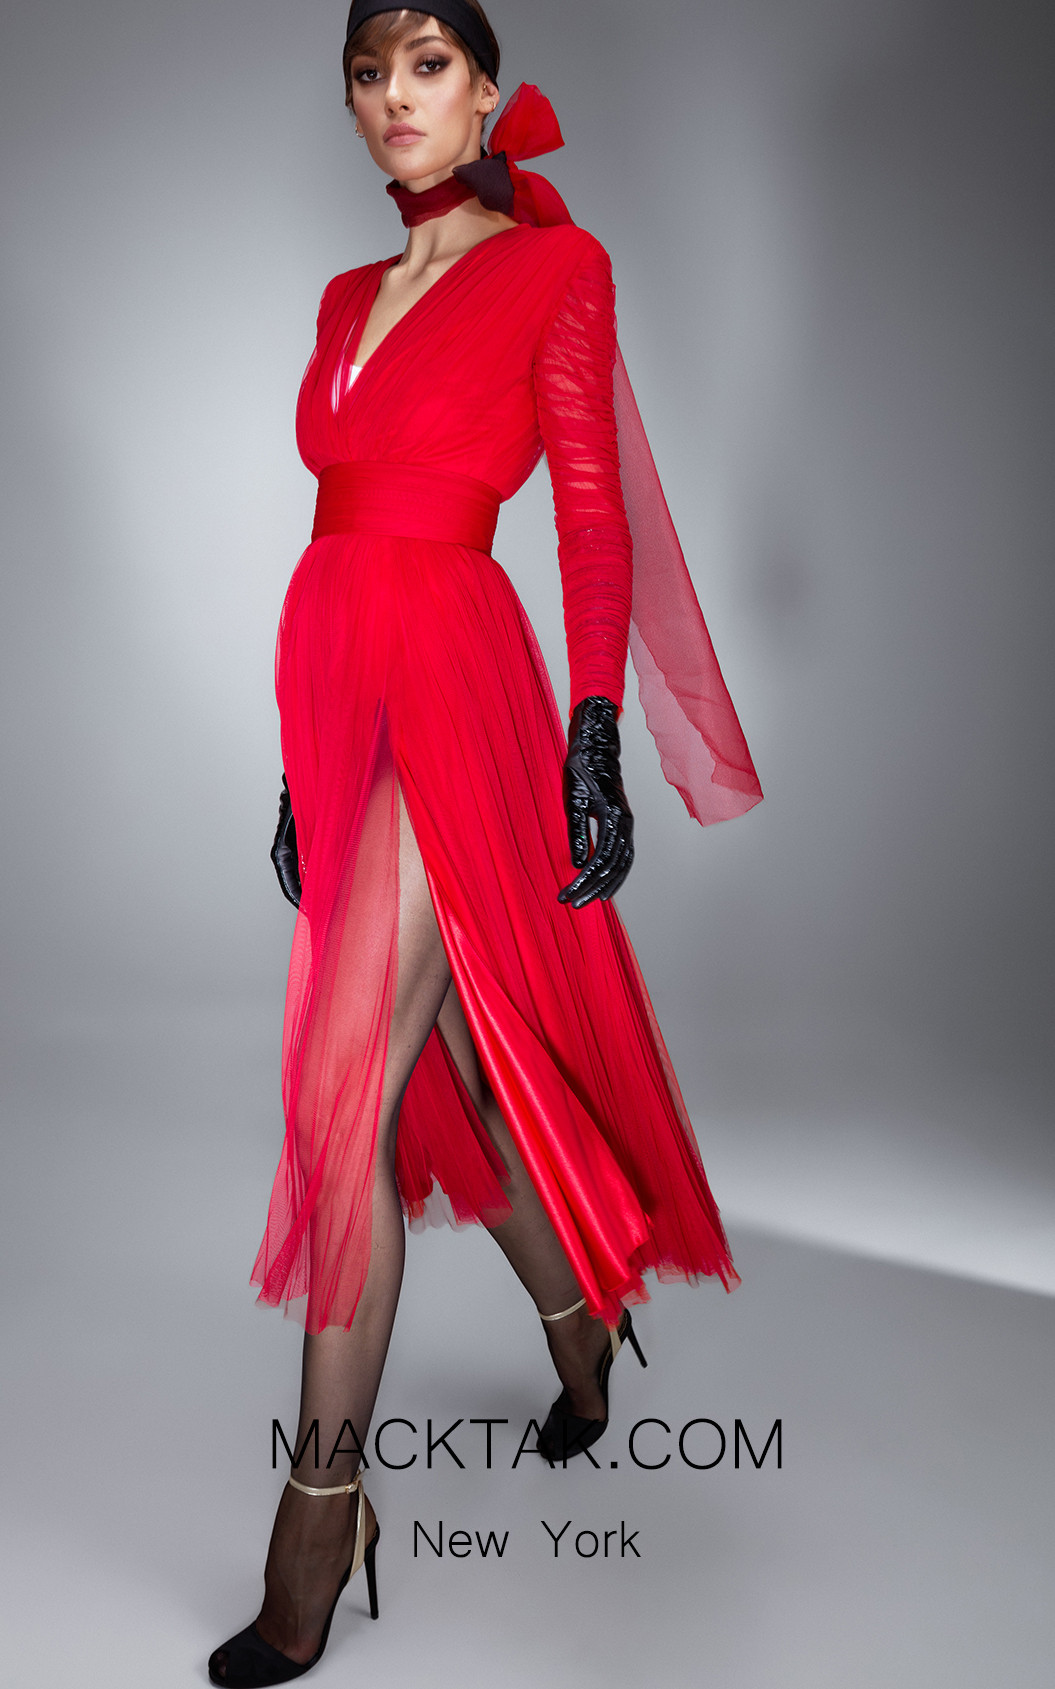 Ana Radu AR008 Red Front Dress